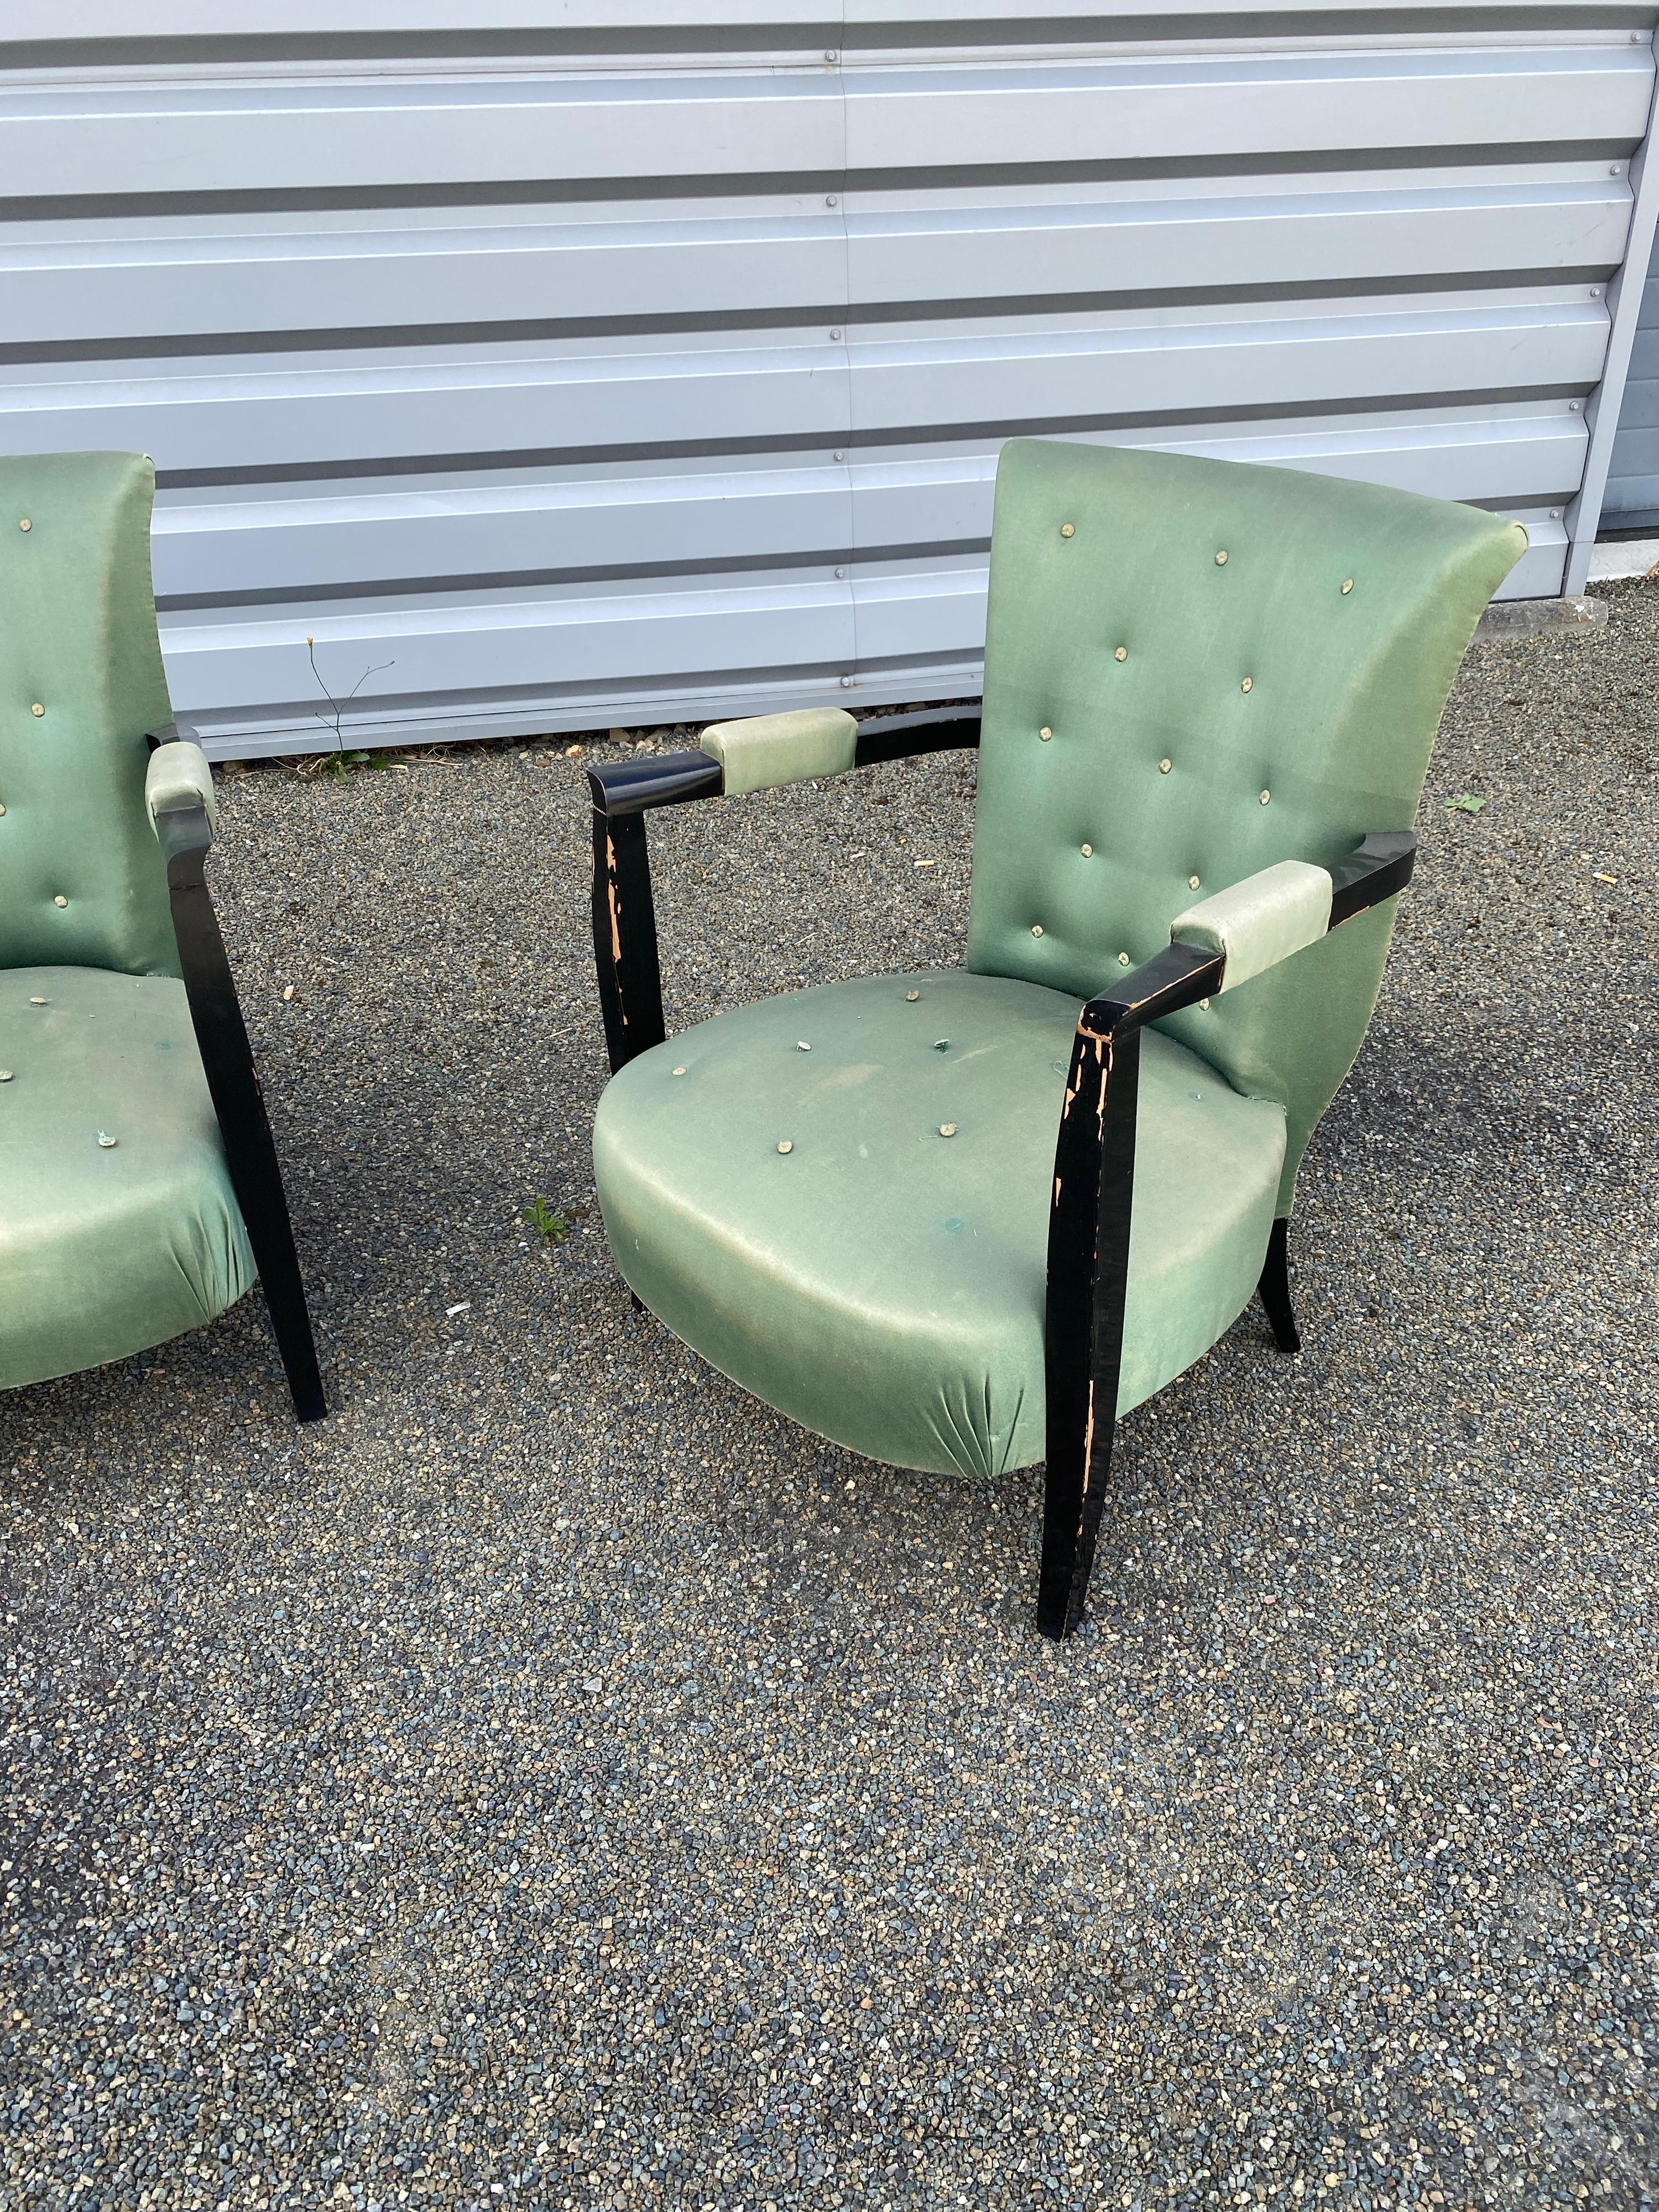 3 Art Deco Sessel aus geschwärztem Holz, um 1940.
Patina und Beschichtung müssen erneuert werden.